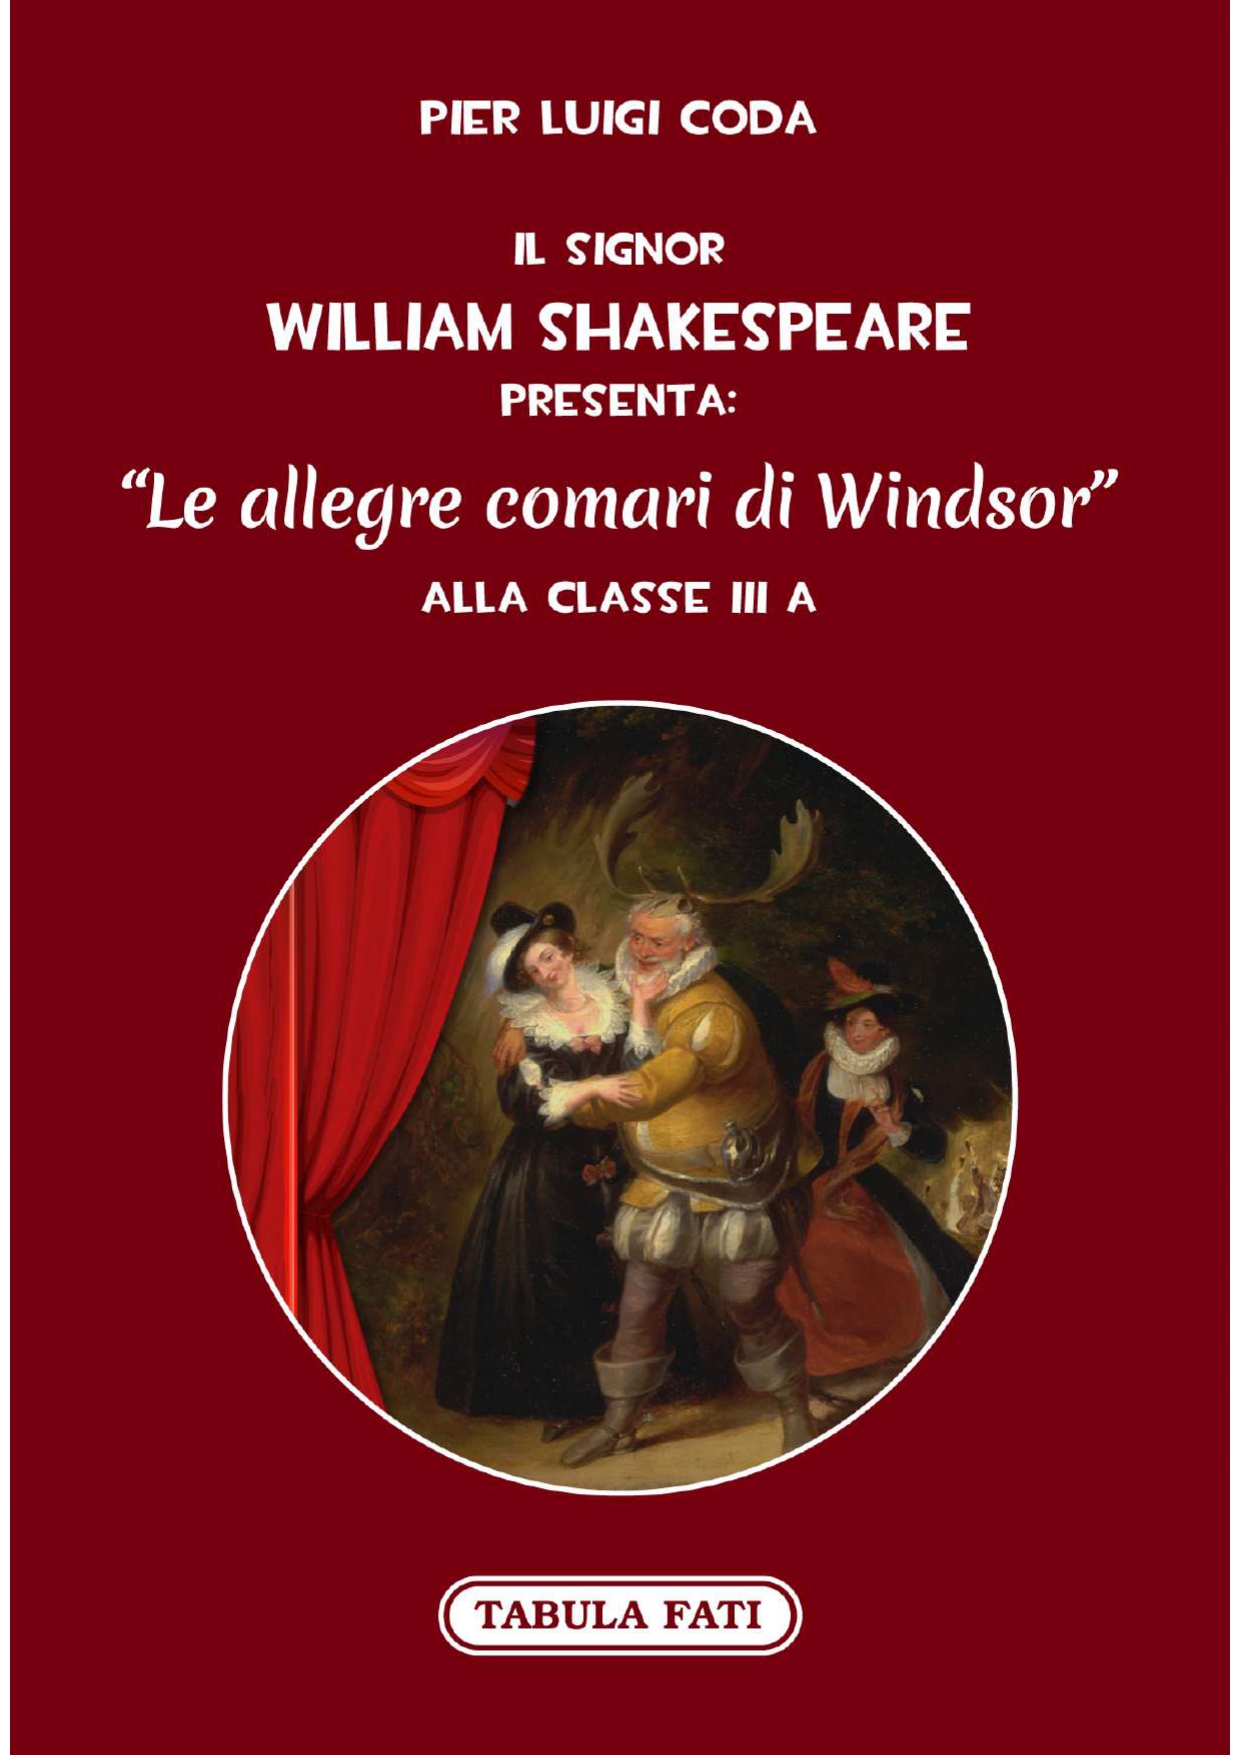 Il S.William Shakespeare presenta:“LE ALLEGRE COMARI DI WINDSOR”